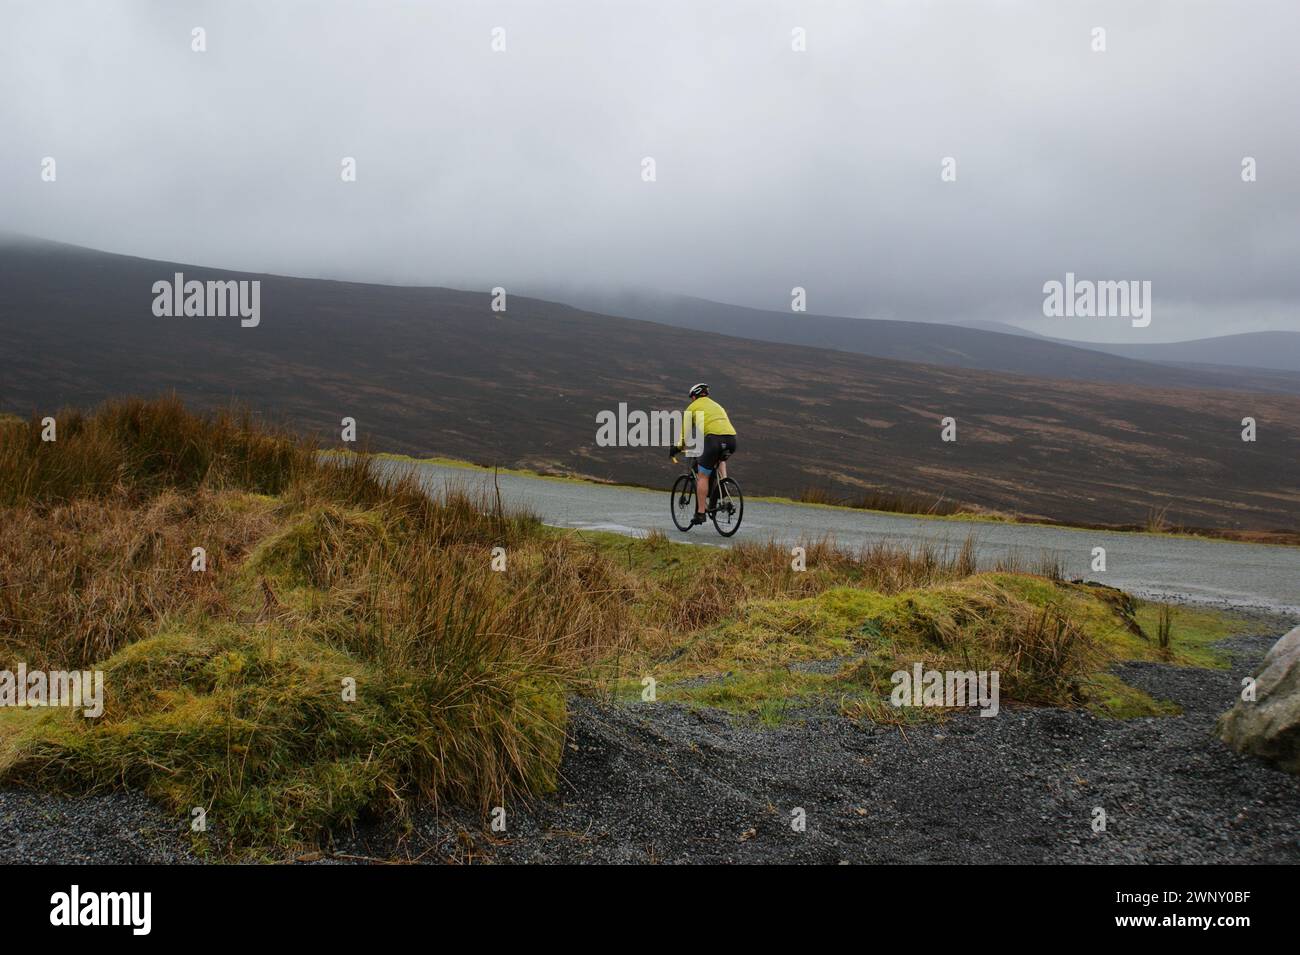 Ein Radfahrer, der auf einer Straße in einem bergigen Gebiet fährt. Landschaft in Irland. Stockfoto